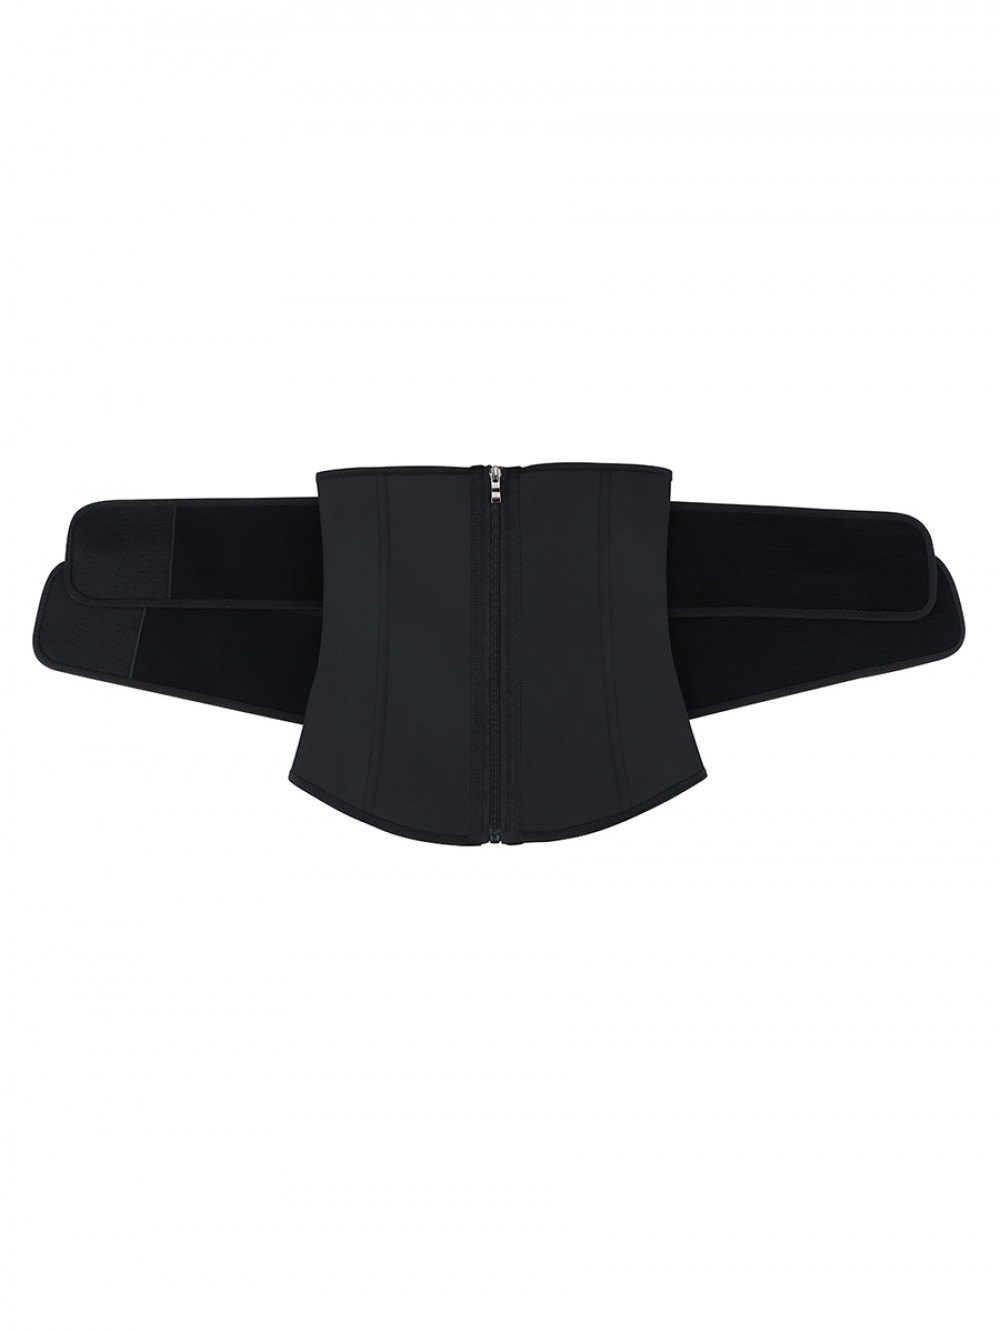 YKK Zipper Black Sticker Latex Double-Belt Waist Trainer Compression Silhouette